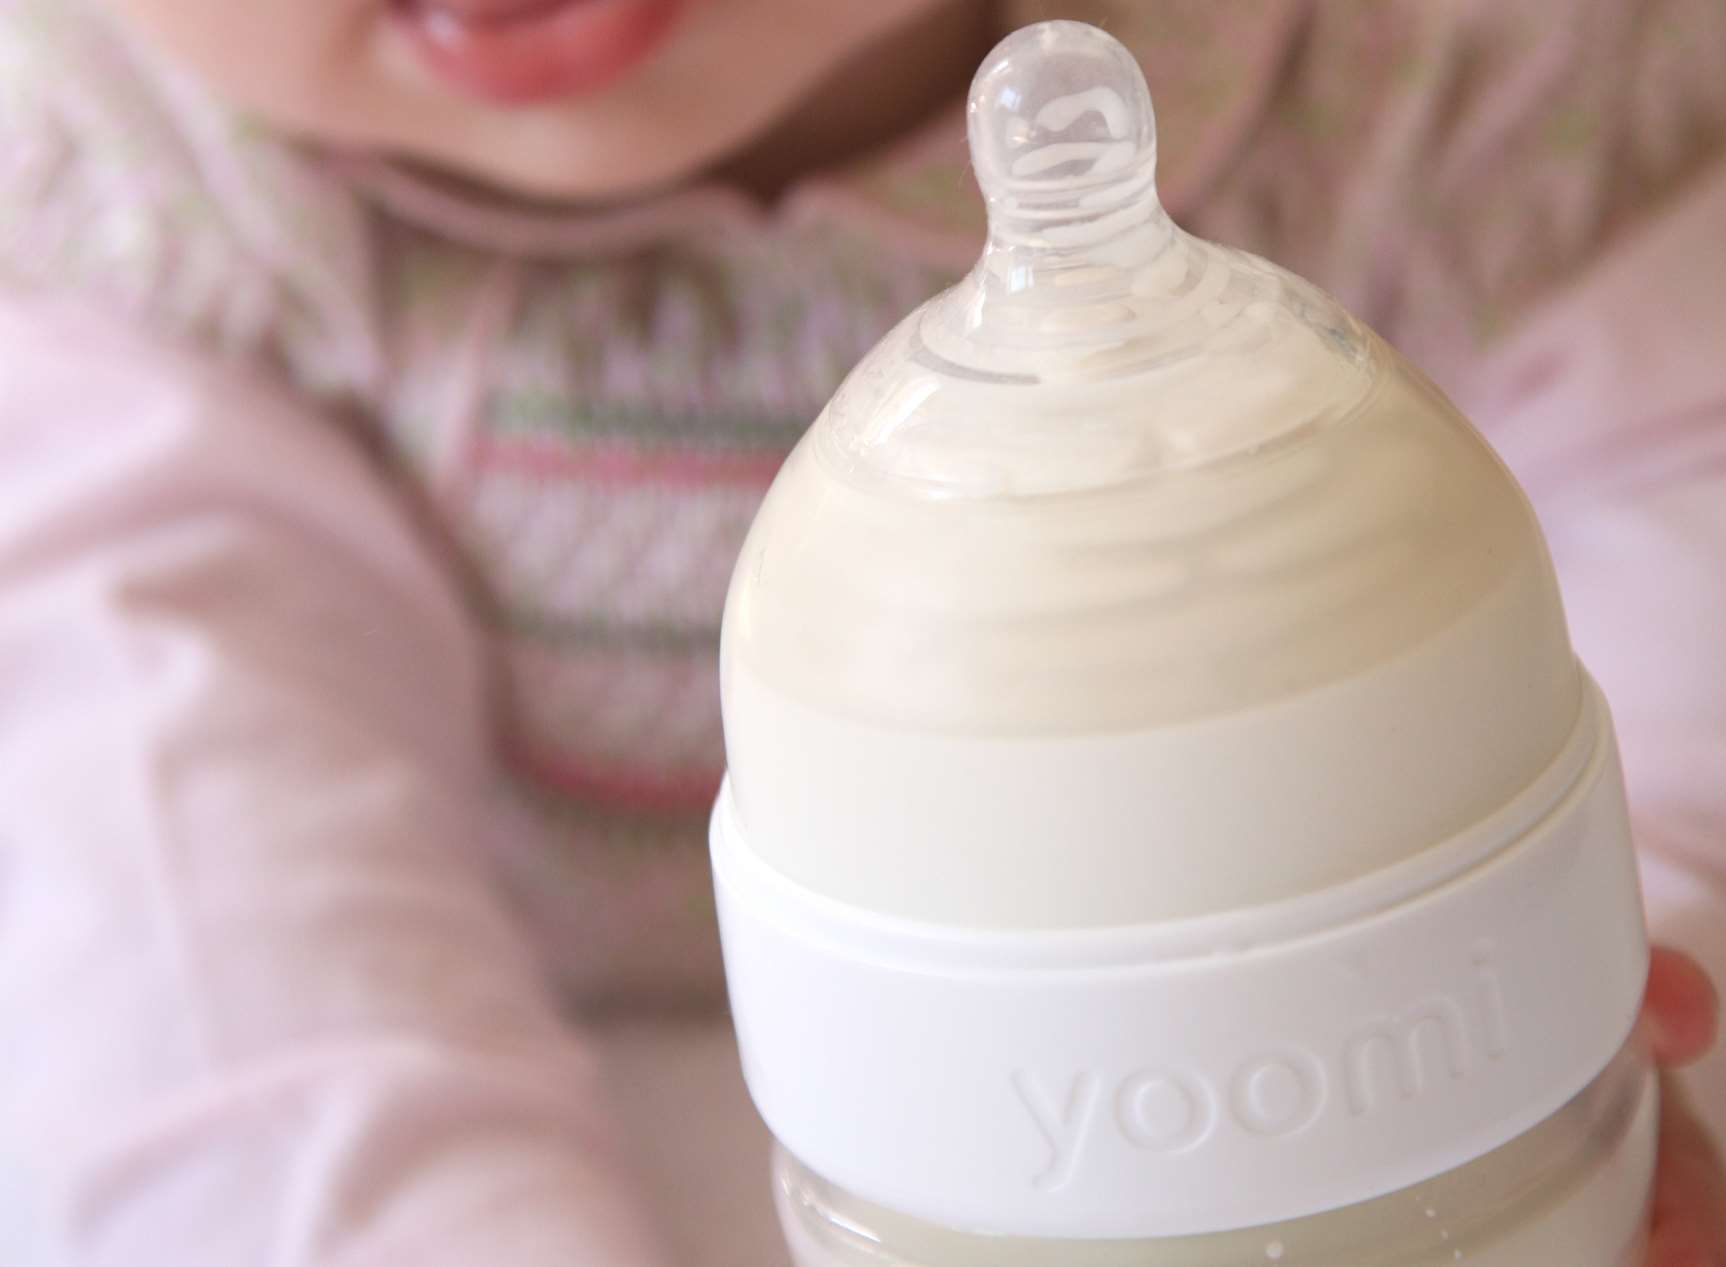 The yoomi bottle